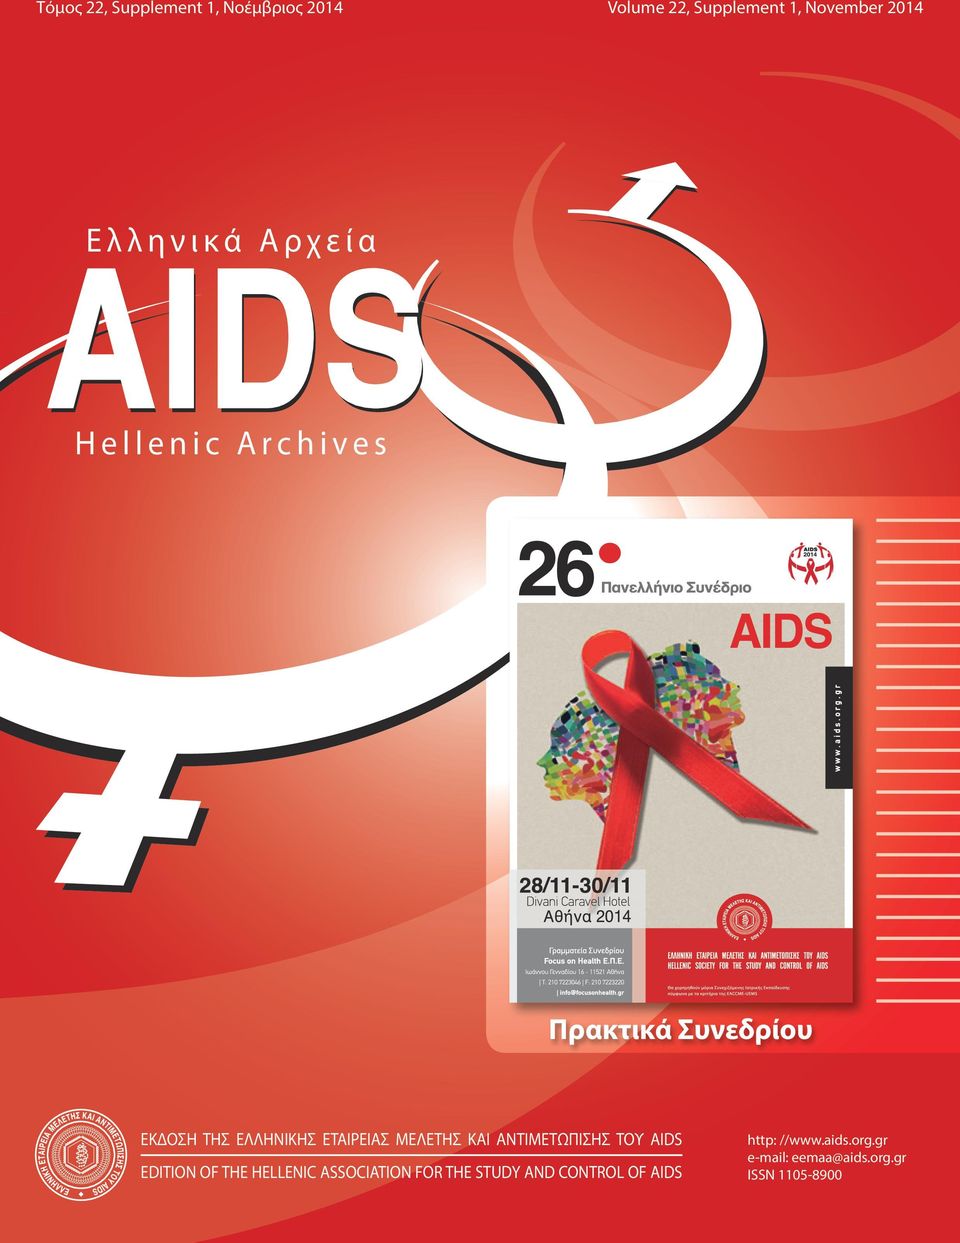 ΕΤΑΙΡΕΙΑΣ ΜΕΛΕΤΗΣ ΚΑΙ ΑΝΤΙΜΕΤΩΠΙΣΗΣ ΤΟΥ AIDS EDITION OF THE HELLENIC ASSOCIATION